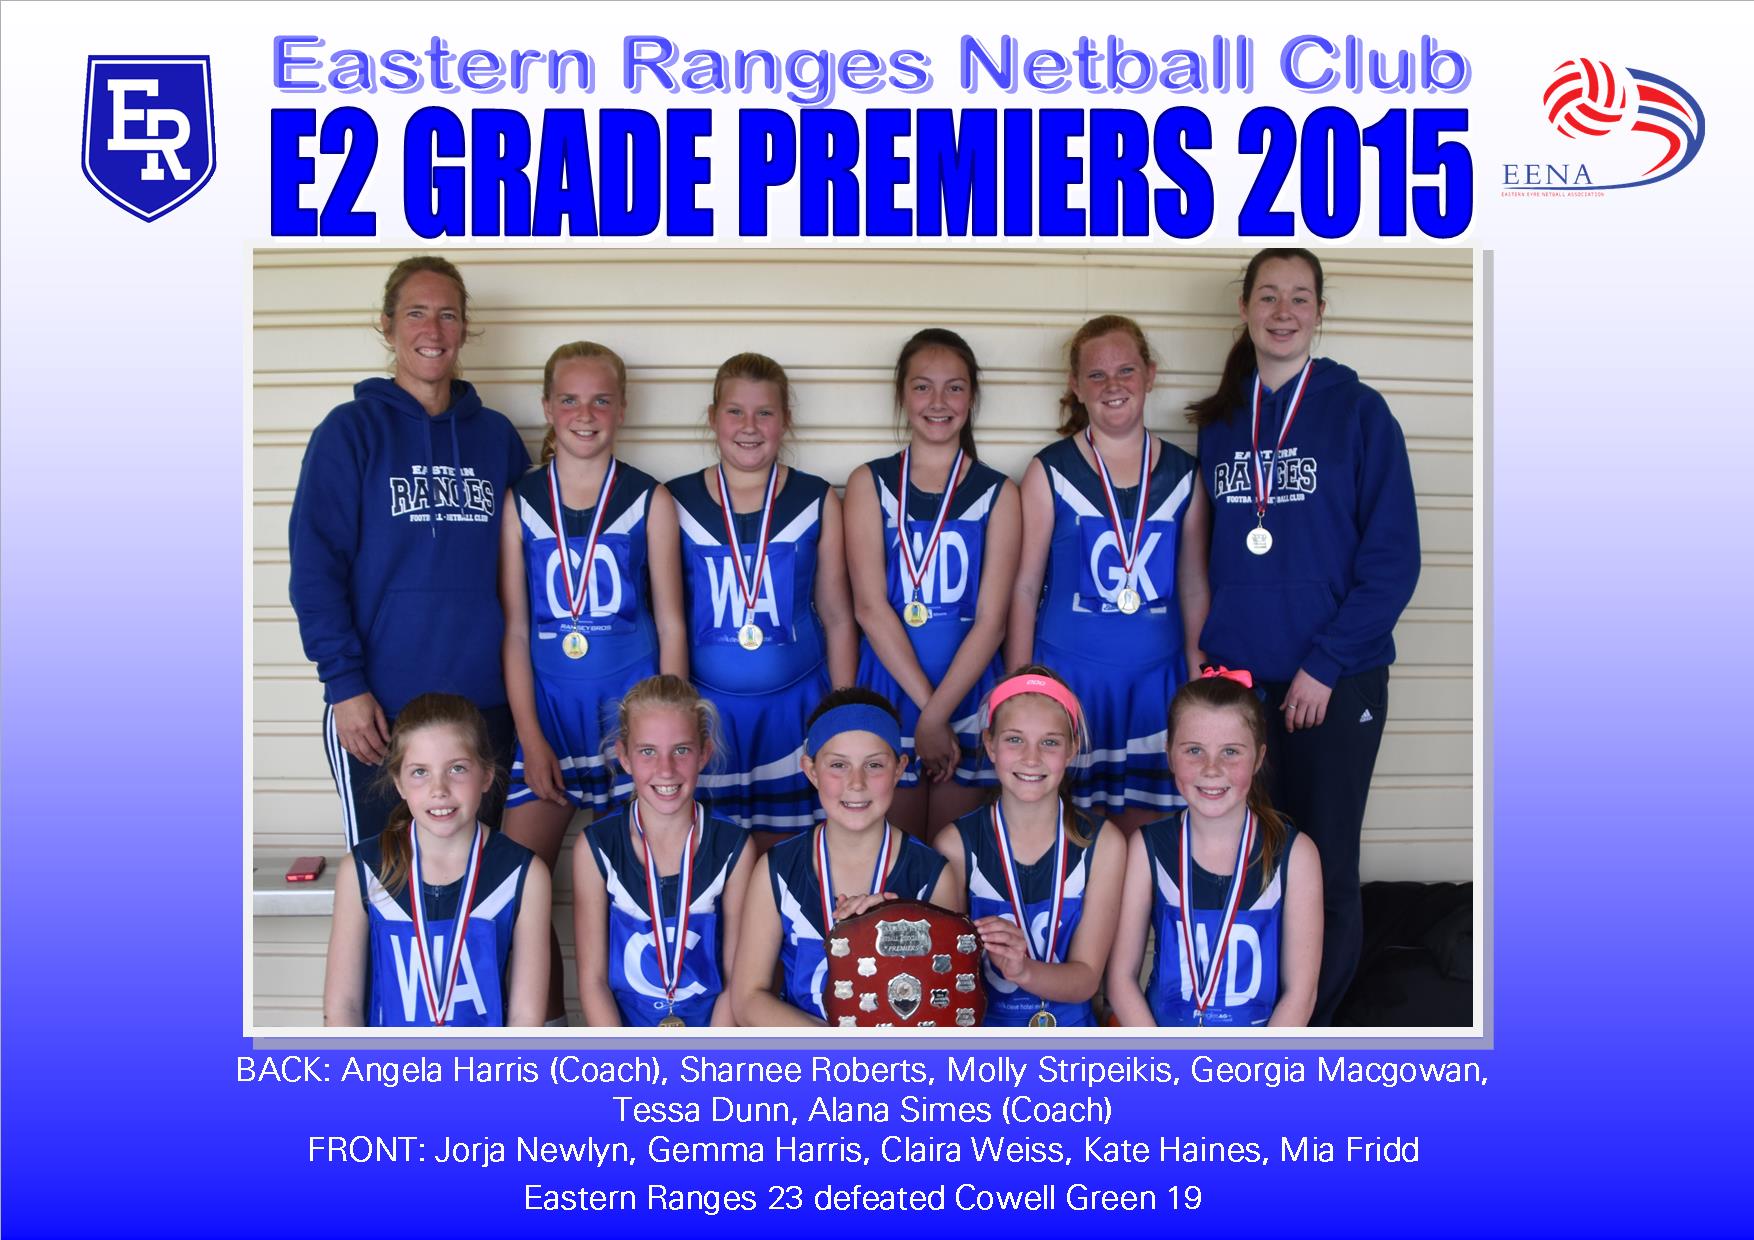 2015 E Grade Premiers